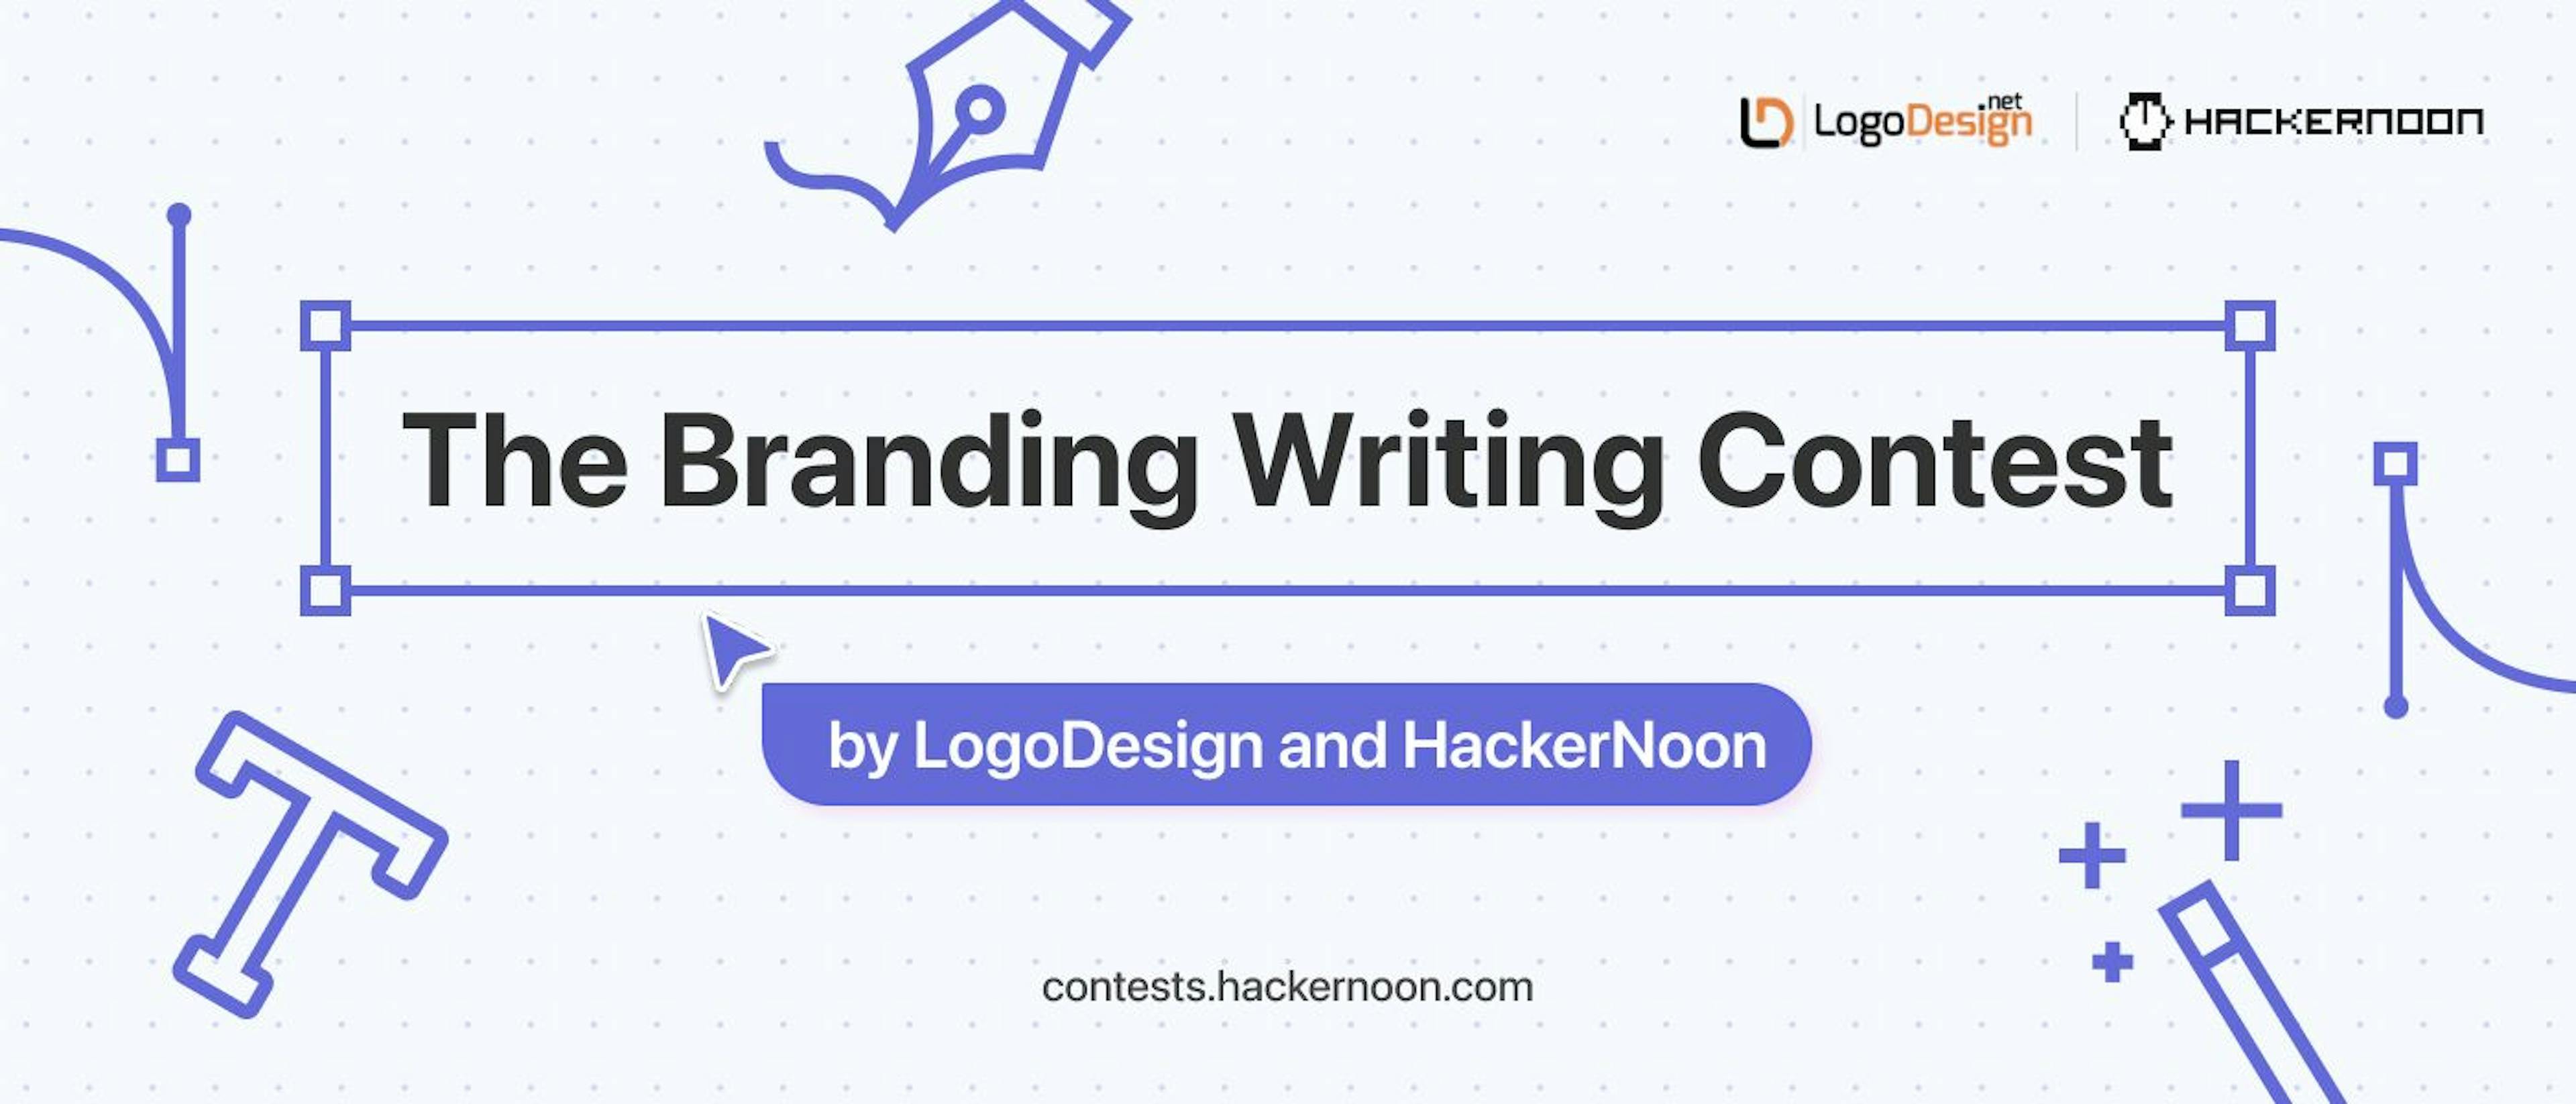 featured image - LogoDesign ve HackerNoon'dan Marka Yazma Yarışması